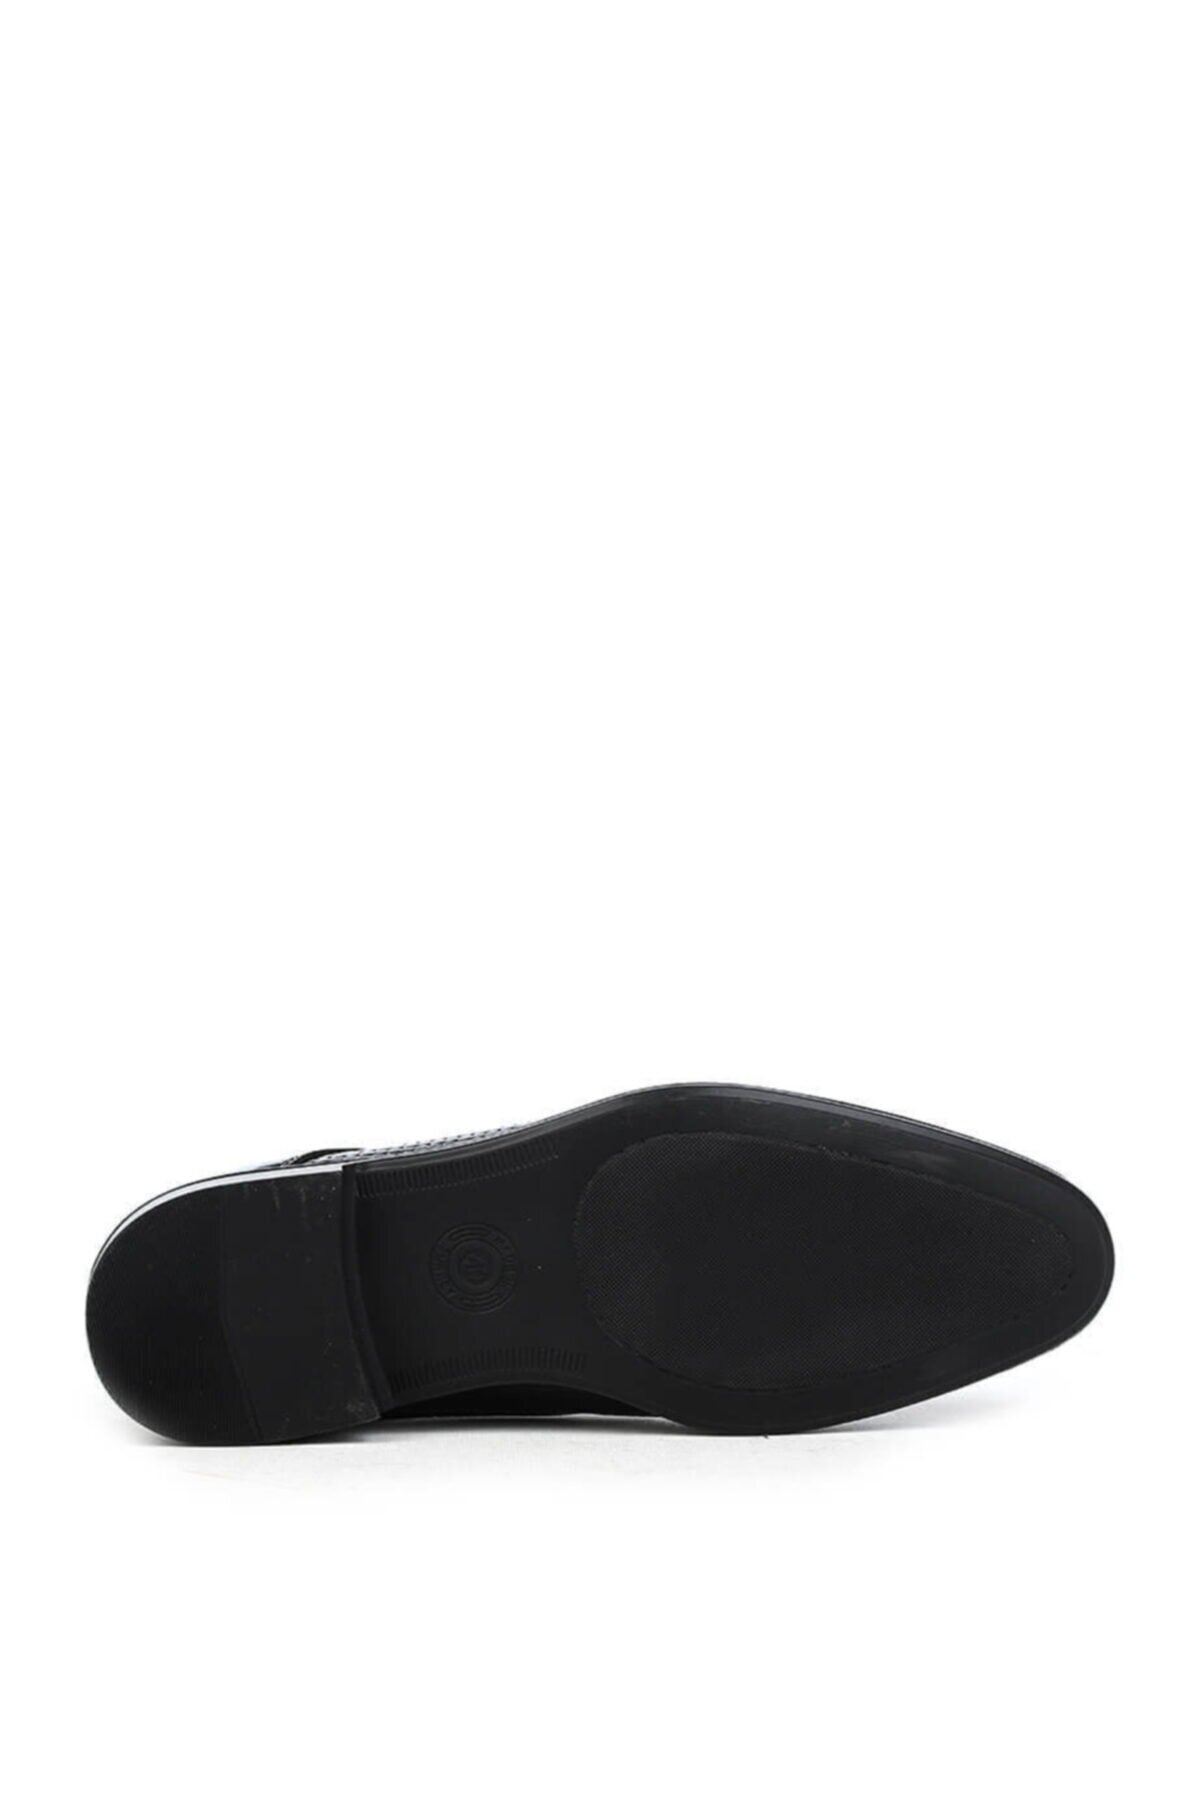 Gizli Topuklu Erkek Siyah Rugan Klasik Ayakkabı MYY135